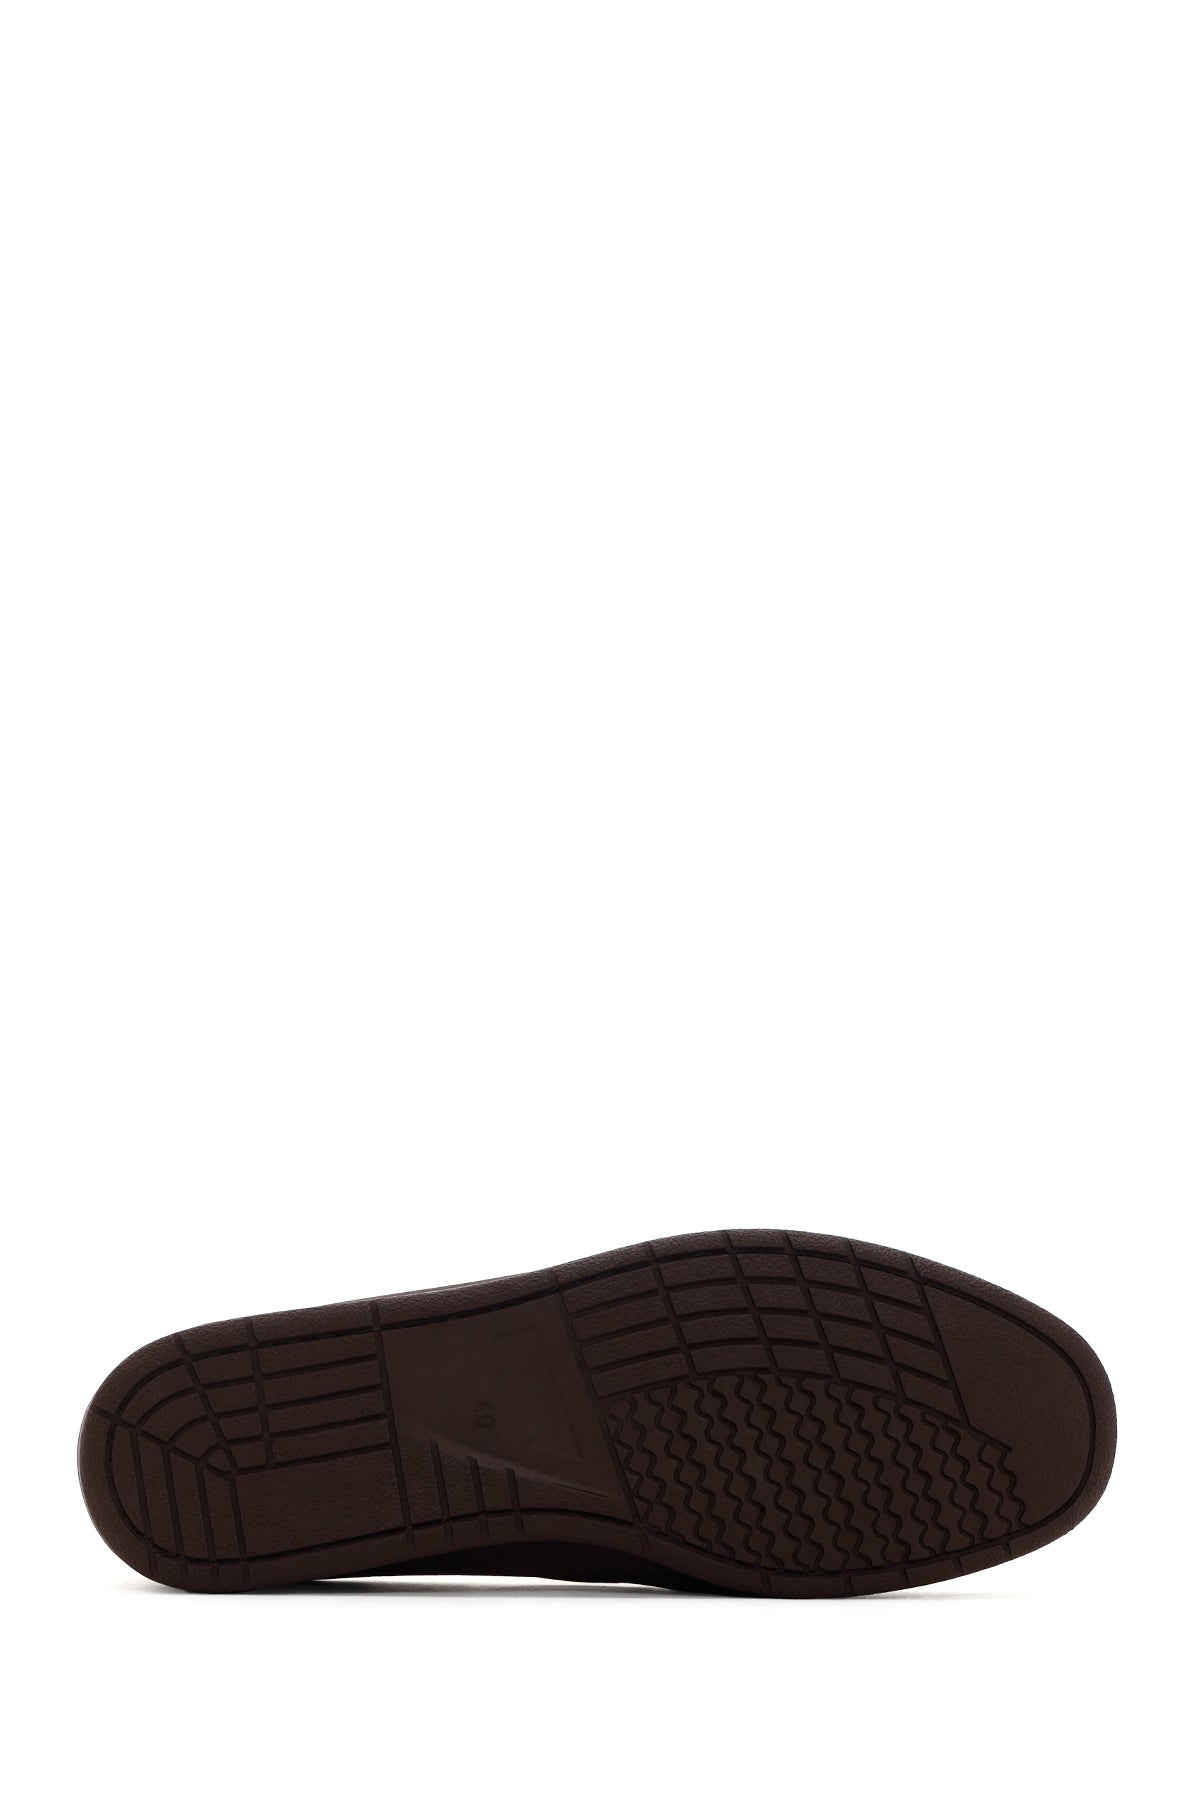 Erkek Kahverengi Deri Casual Ayakkabı